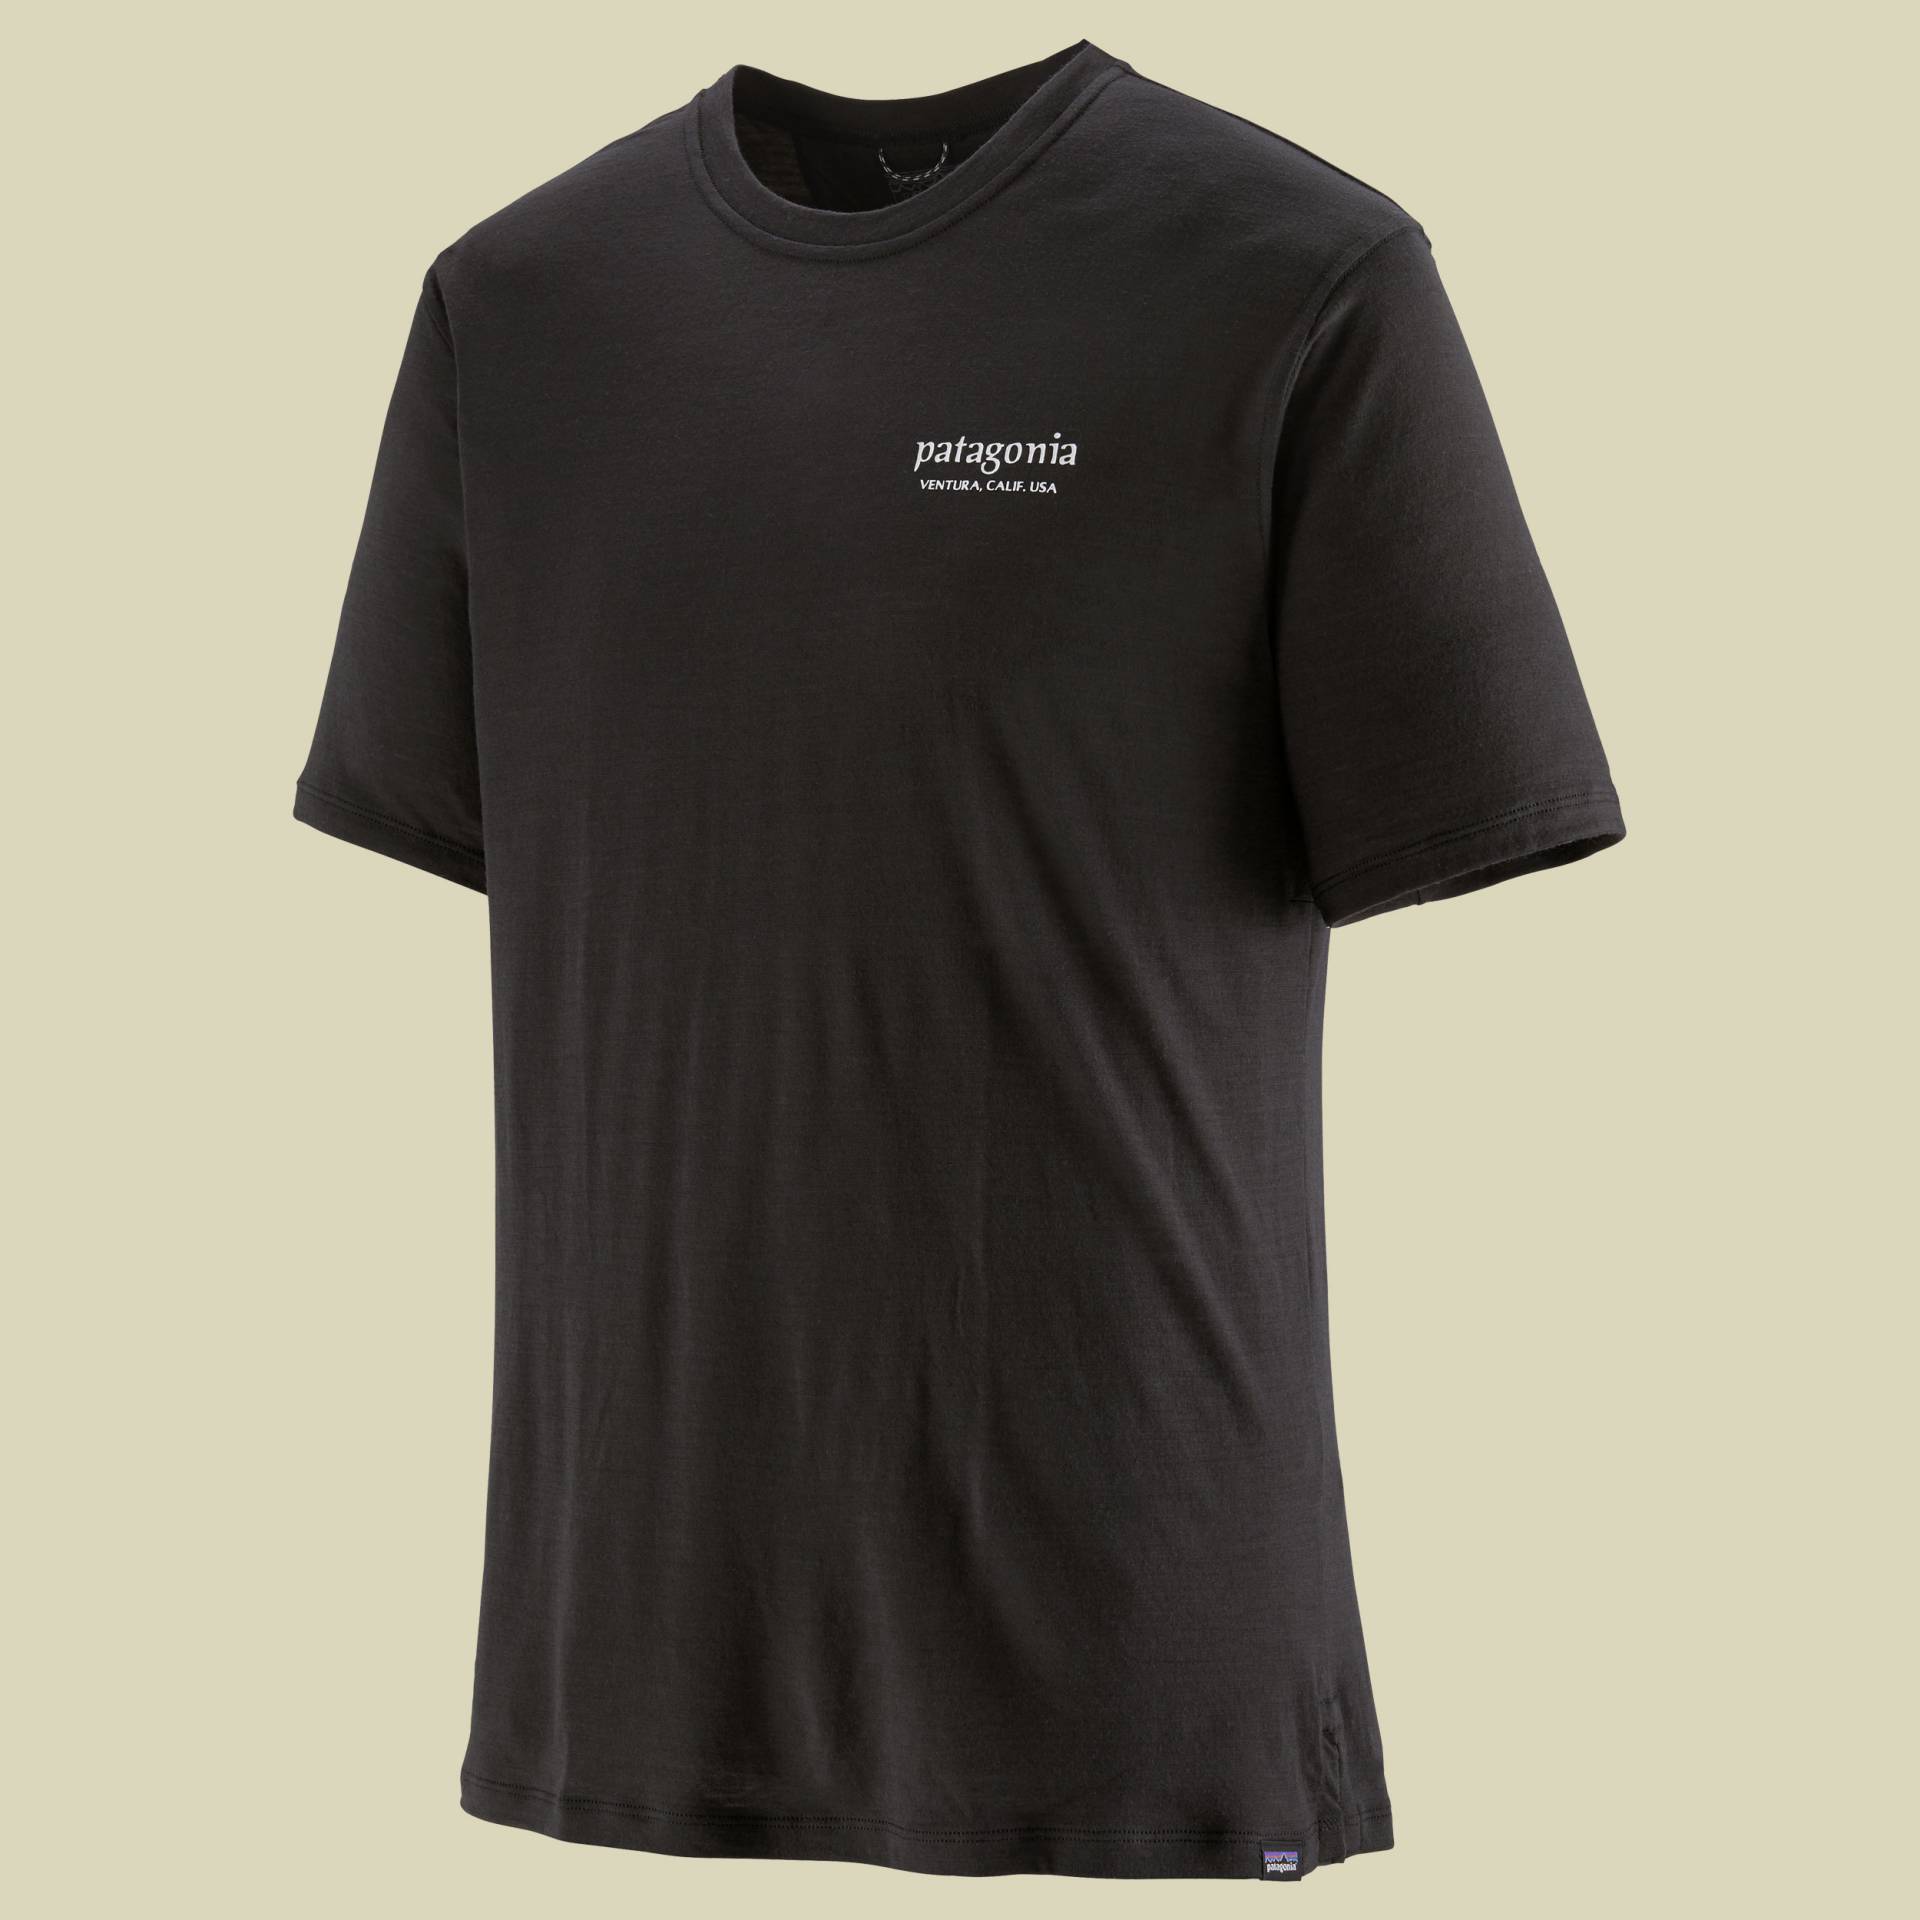 Cap Cool Merino Blend Graphic Shirt Men L schwarz - heritage header:black von Patagonia